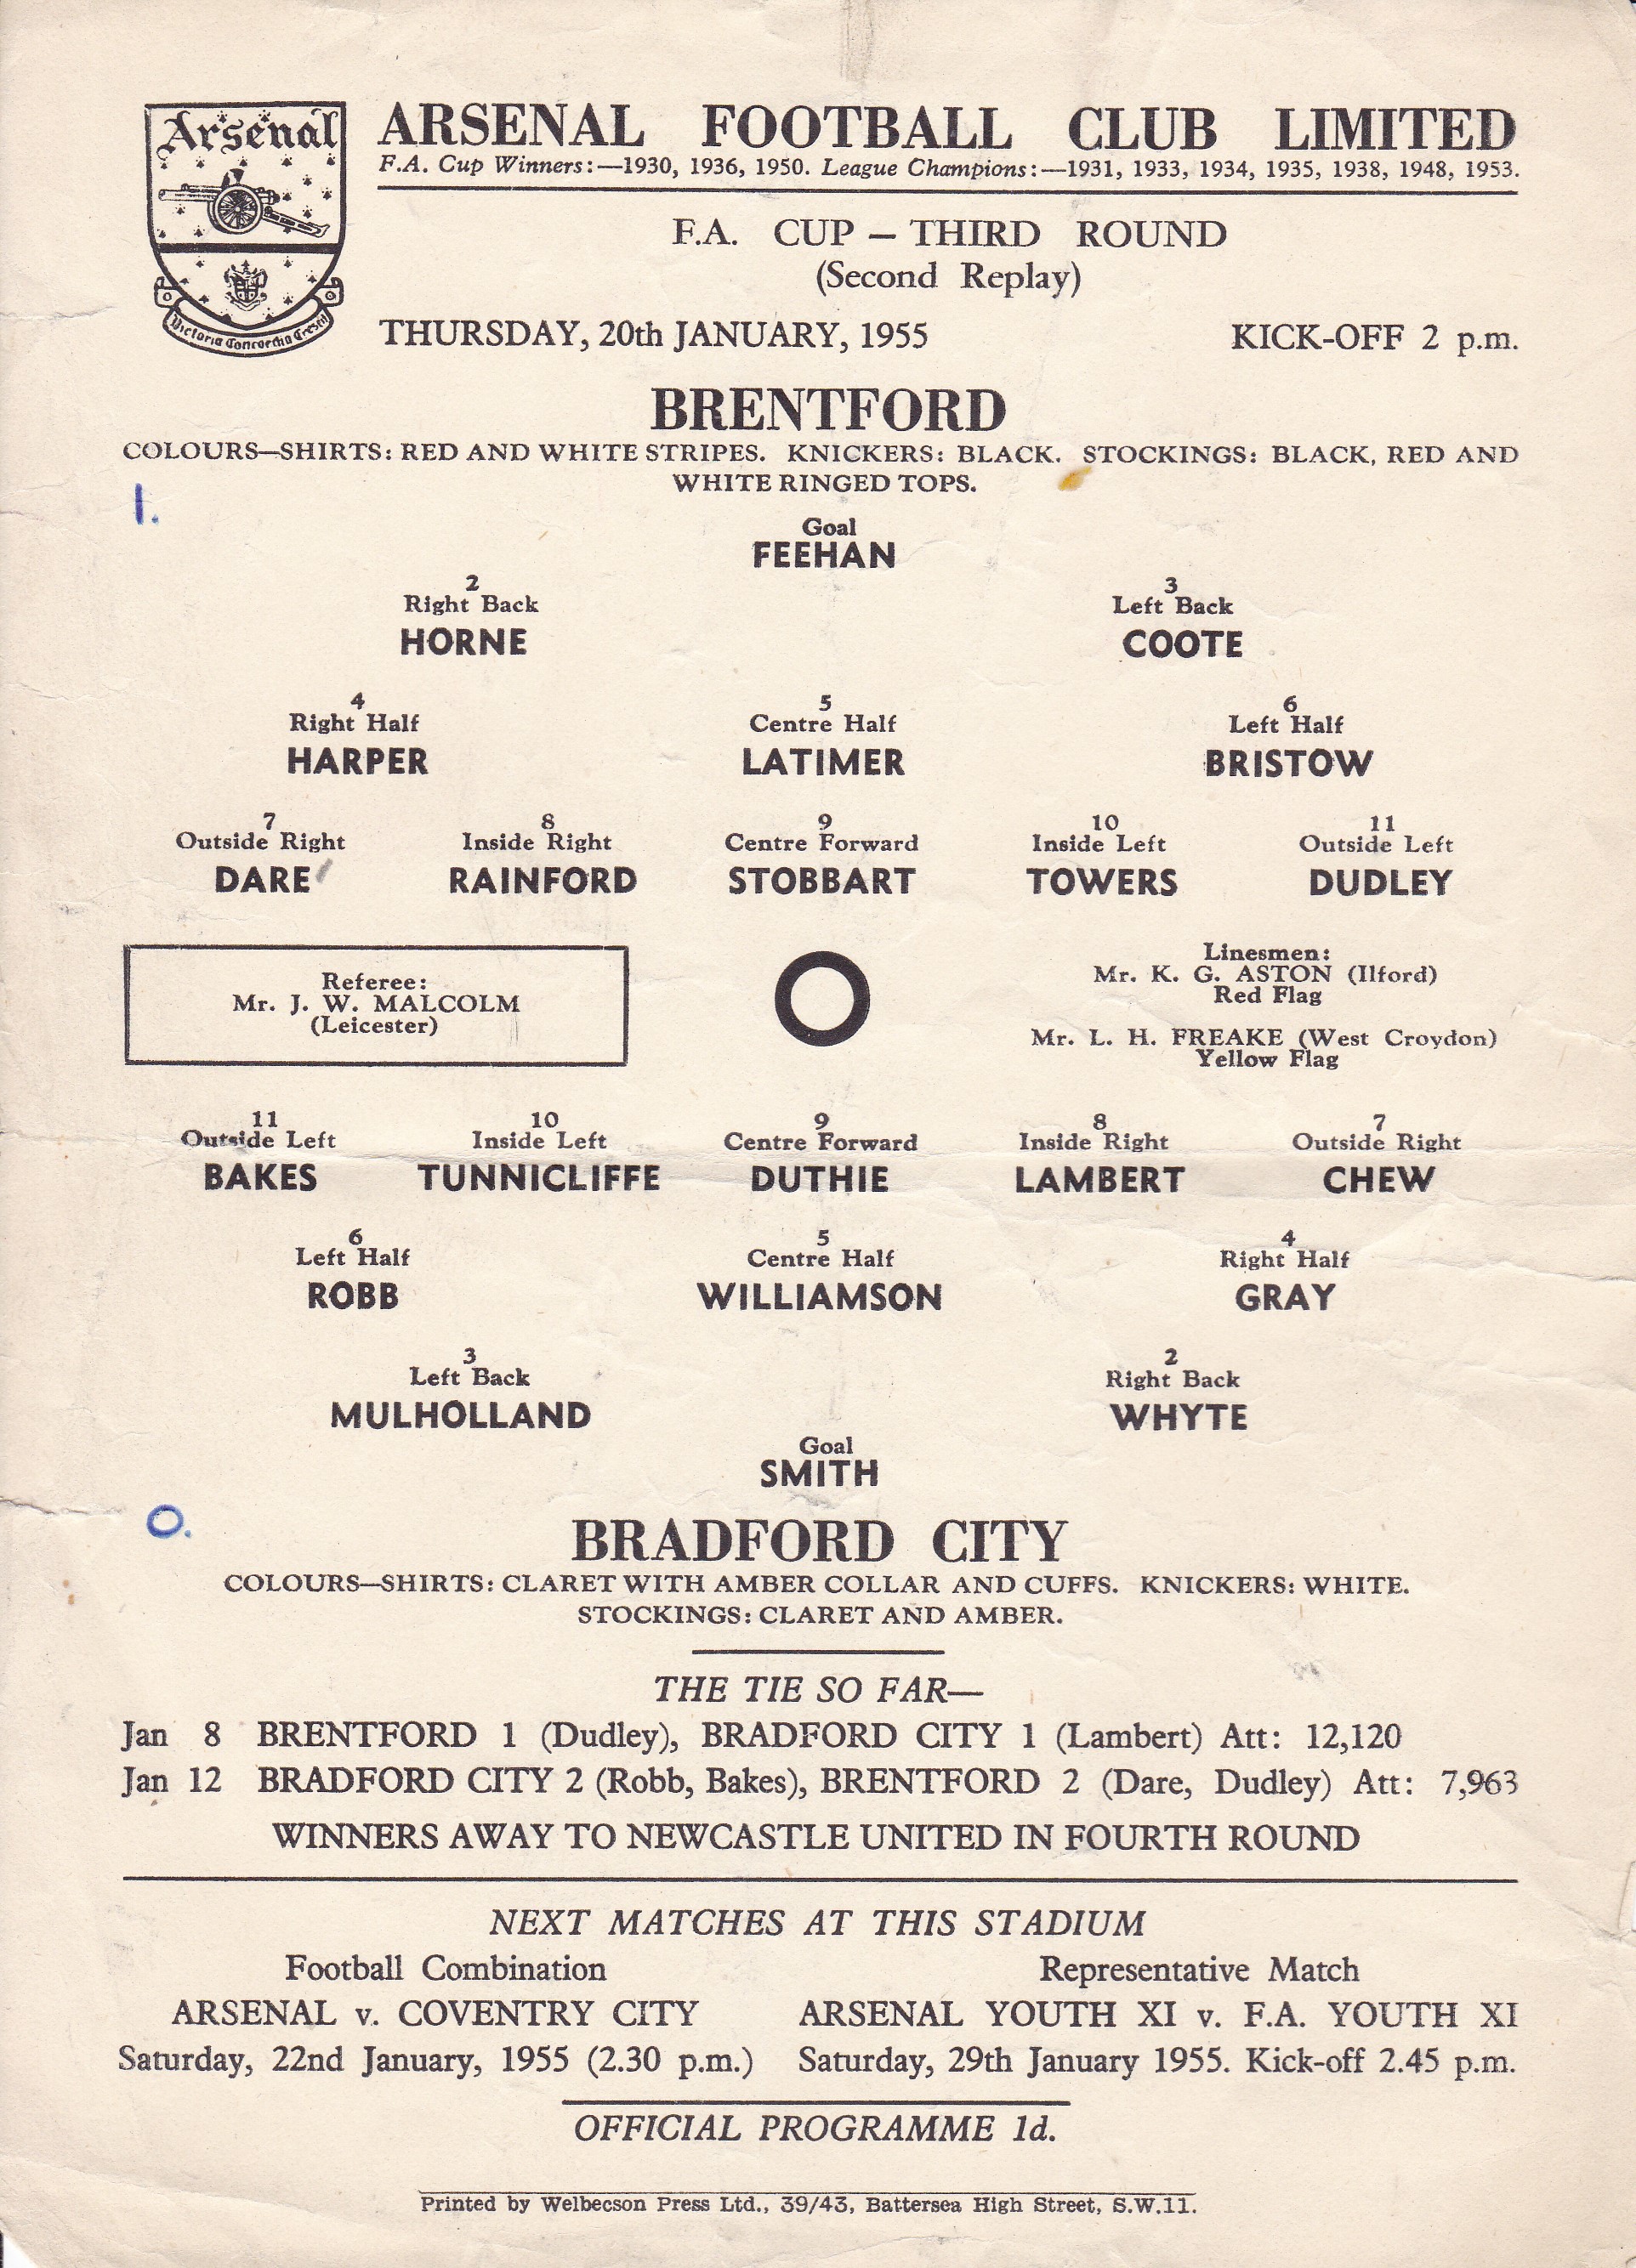 BRENTFORD - BRADFORD CITY AT ARSENAL 55 Arsenal single sheet programme, Brentford v Bradford City,